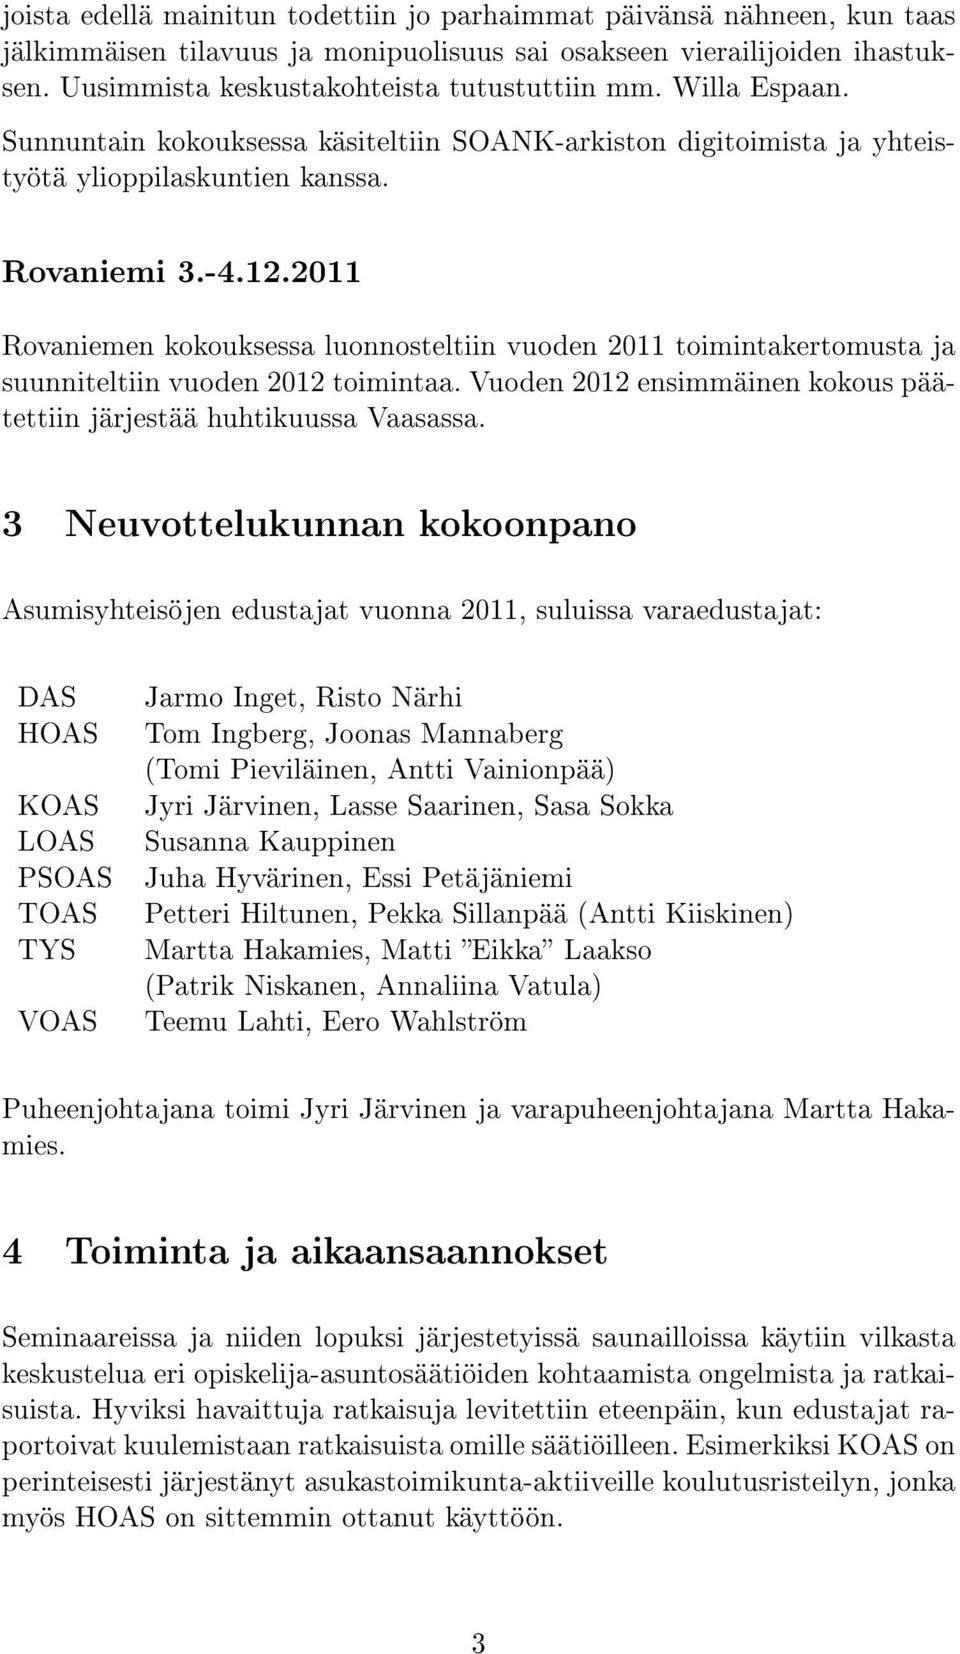 2011 Rovaniemen kokouksessa luonnosteltiin vuoden 2011 toimintakertomusta ja suunniteltiin vuoden 2012 toimintaa. Vuoden 2012 ensimmäinen kokous päätettiin järjestää huhtikuussa Vaasassa.